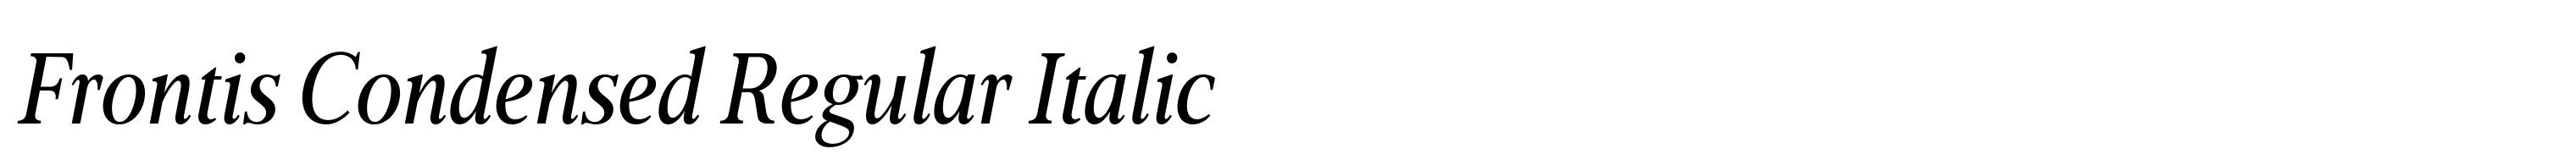 Frontis Condensed Regular Italic